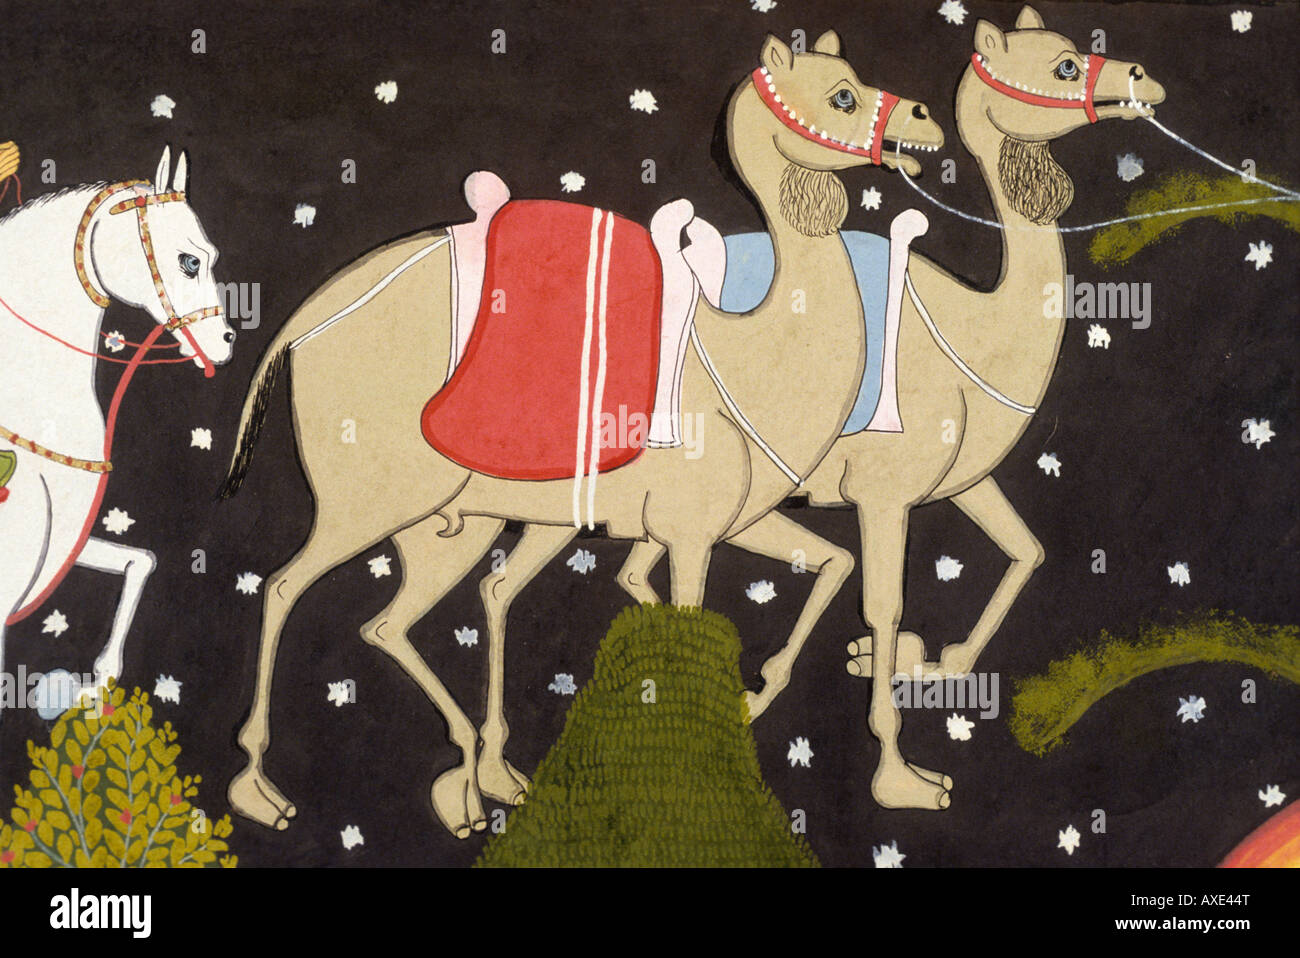 L'histoire de camel lnt c 1700 kanoria. Peinture miniature indienne, Rajasthan Inde Banque D'Images